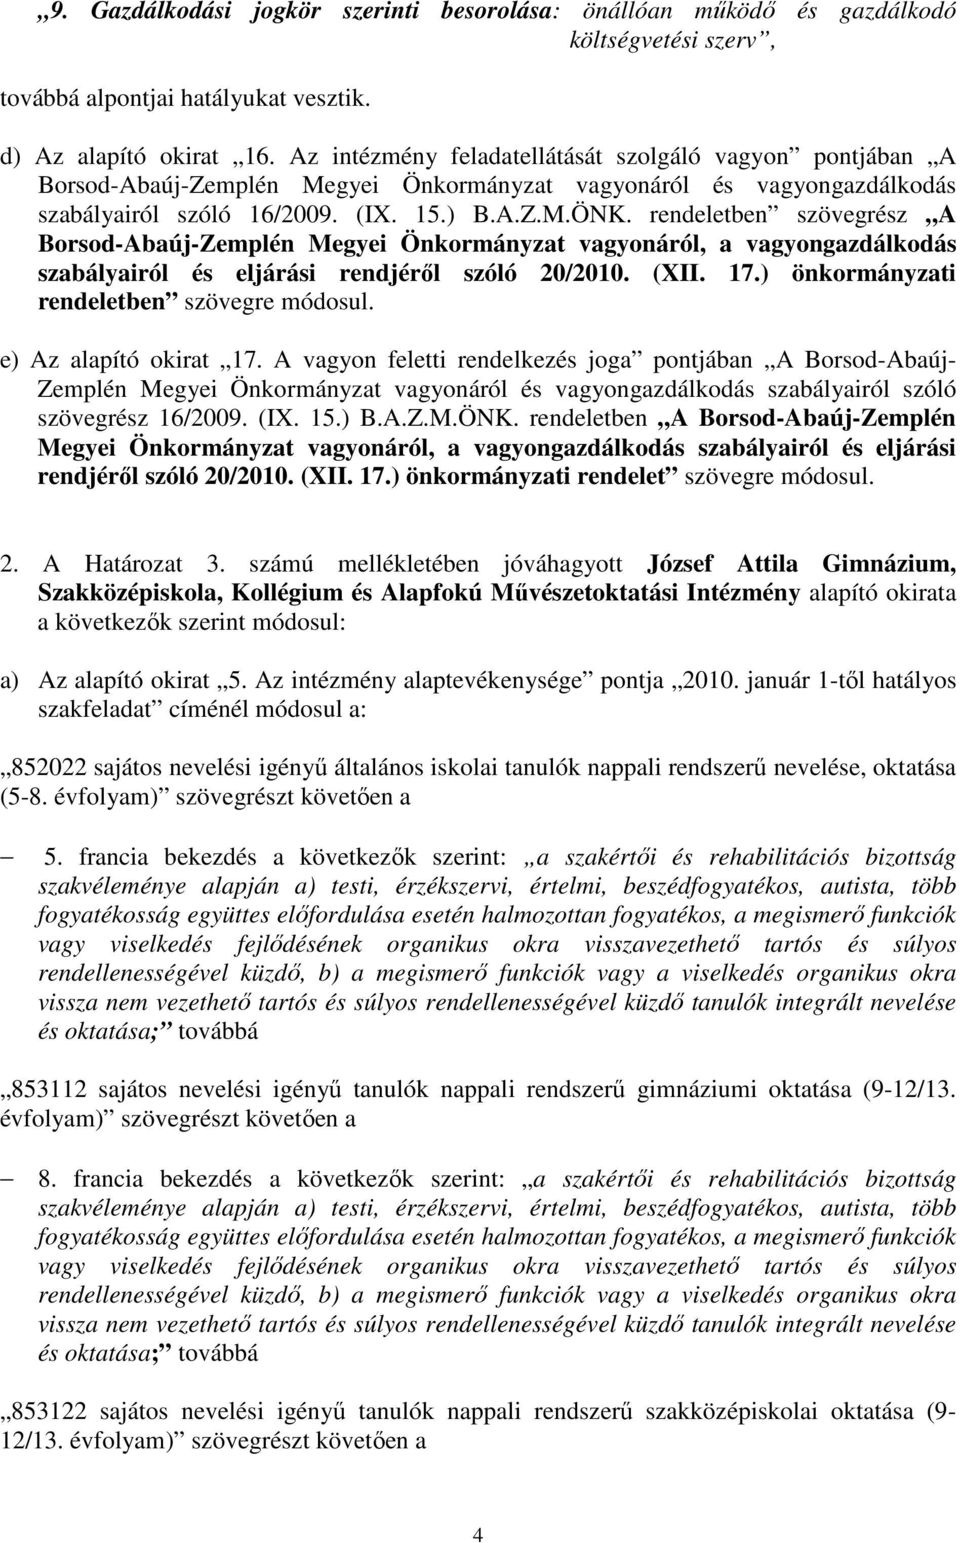 rendeletben szövegrész A Borsod-Abaúj-Zemplén Megyei Önkormányzat vagyonáról, a vagyongazdálkodás szabályairól és eljárási rendjéről szóló 20/2010. (XII. 17.